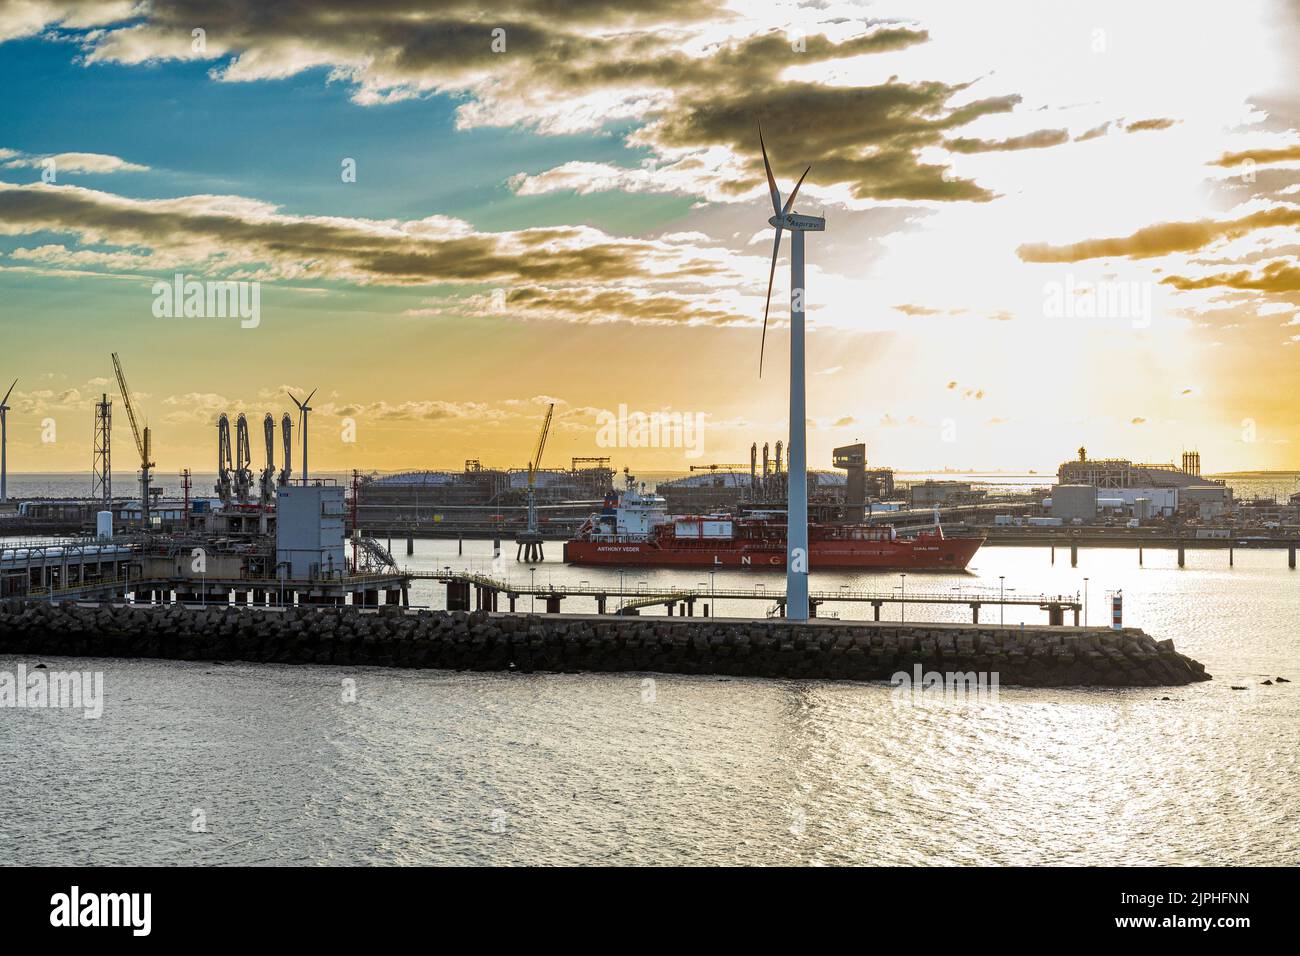 Daybreak in the harbour at Zeebrugge, Belgium Stock Photo